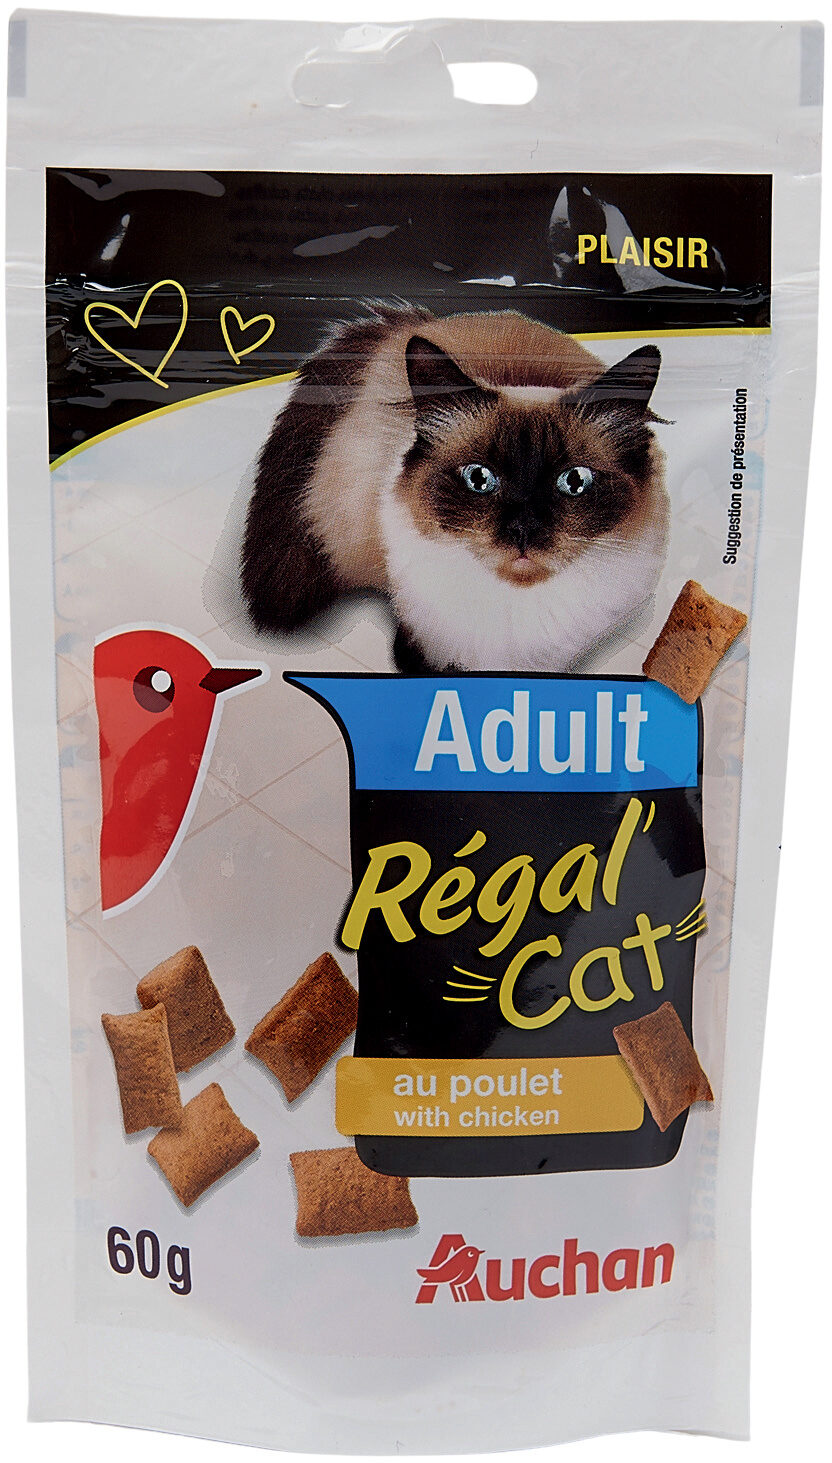 Regal Cat au Poulet - Product - fr